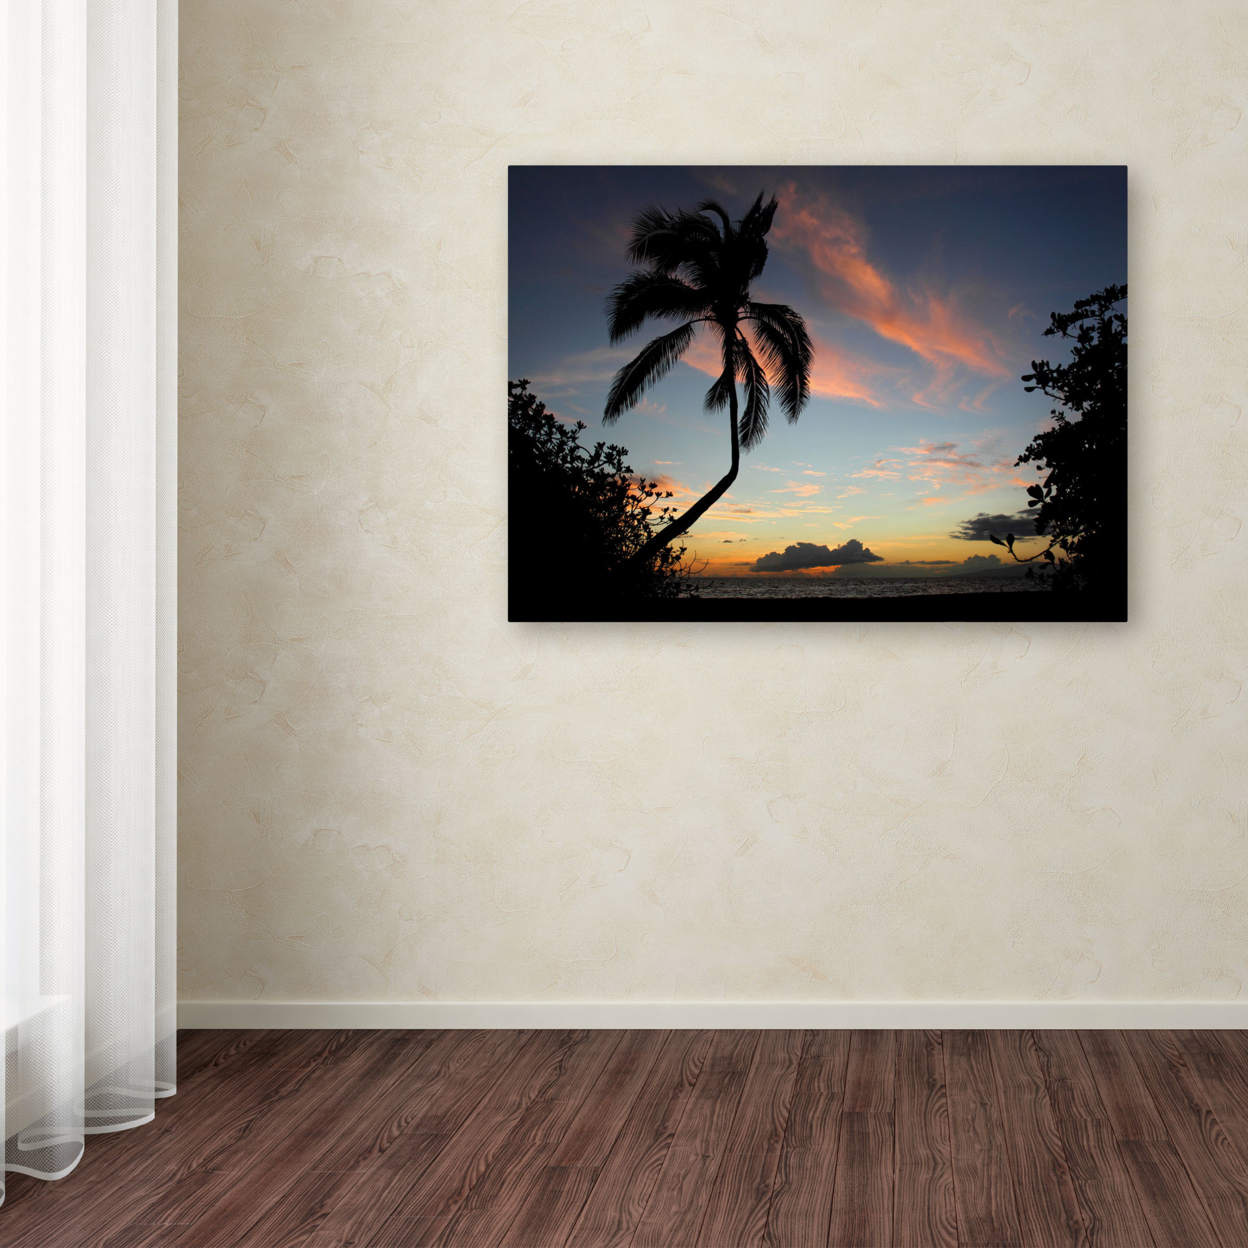 Pierre Leclerc 'Tropical Sunset' Canvas Art 16 X 24